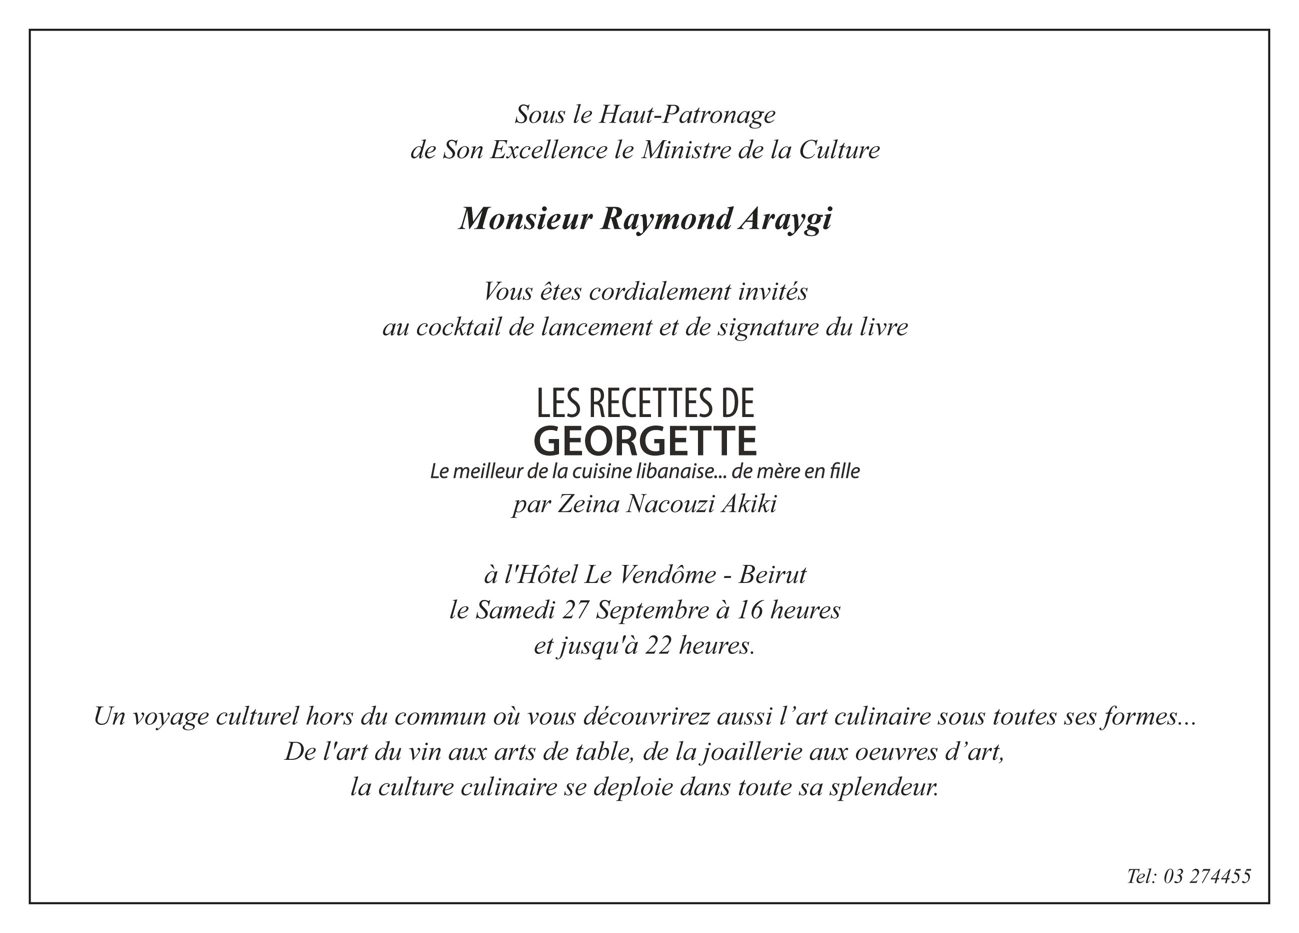 Les Recettes de Georgette_Launching invitation